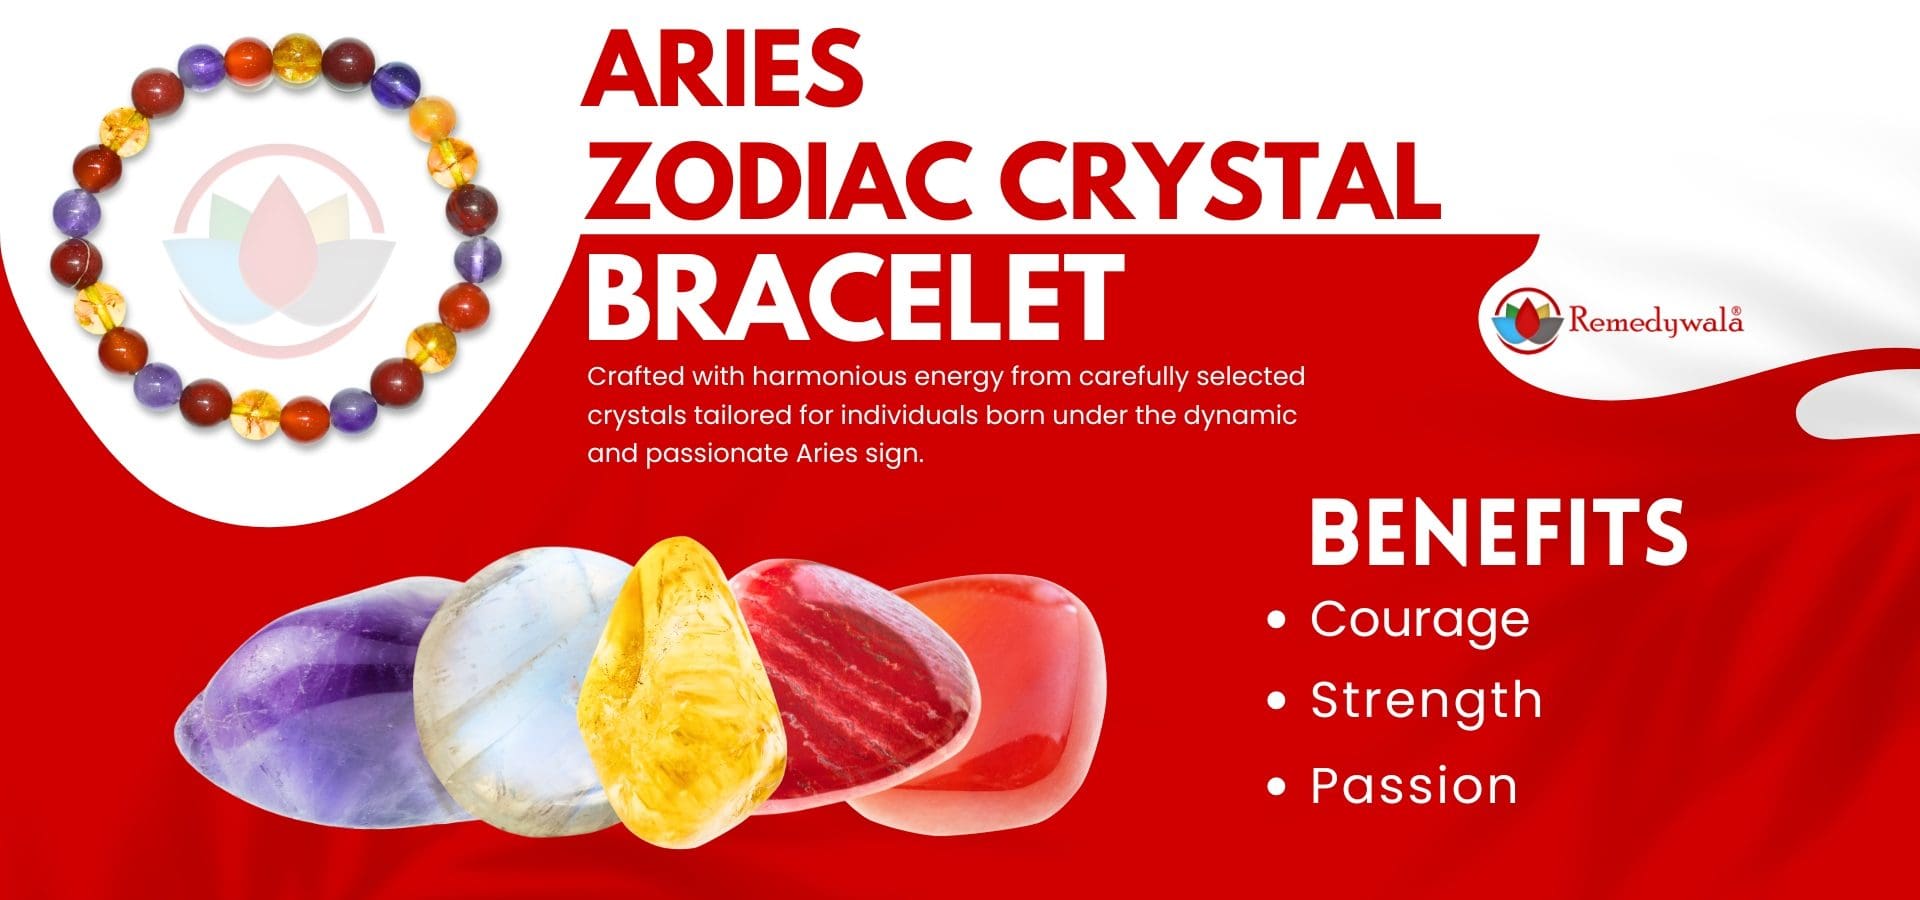 Aries Zodiac Crystal Bracelet